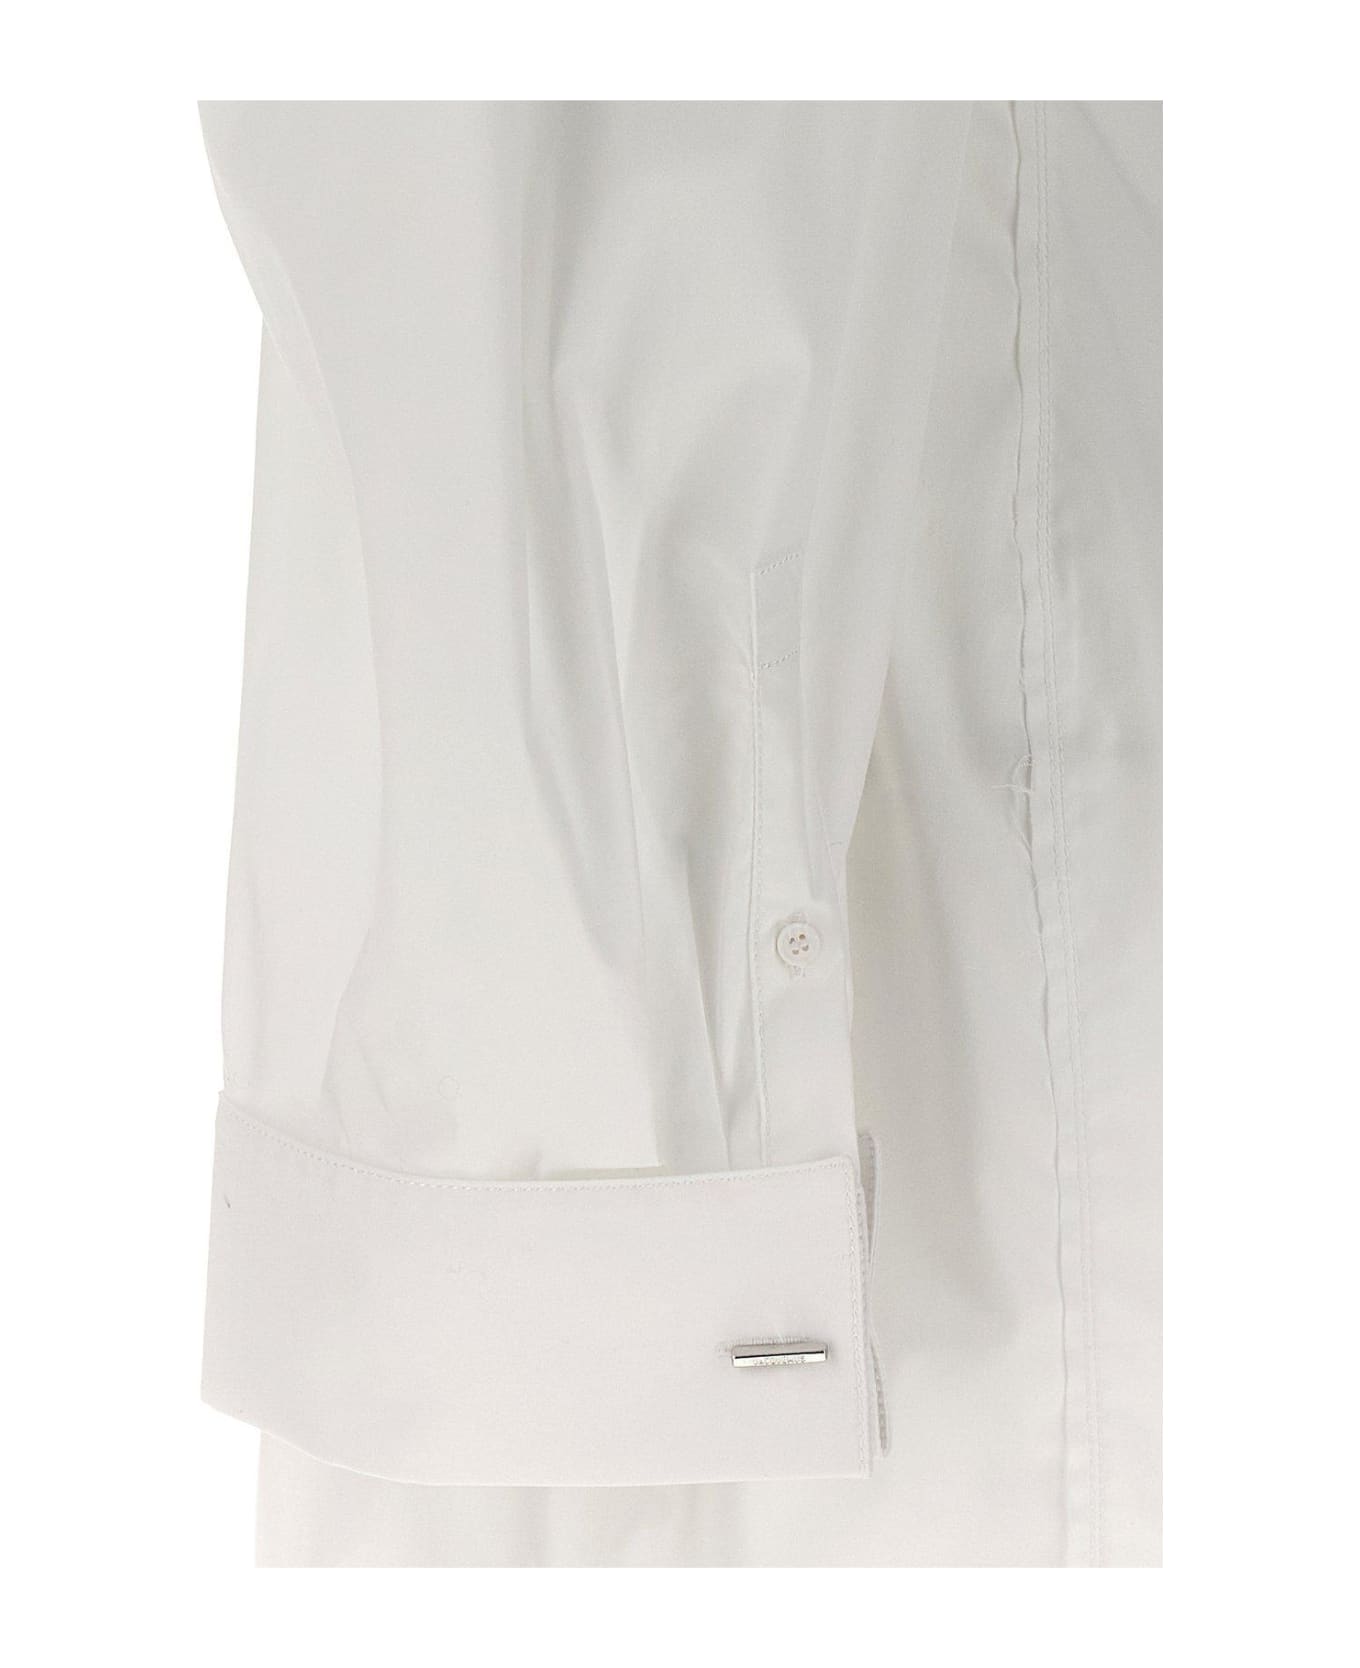 Jacquemus La Robe Galliga Shirt Dress - White